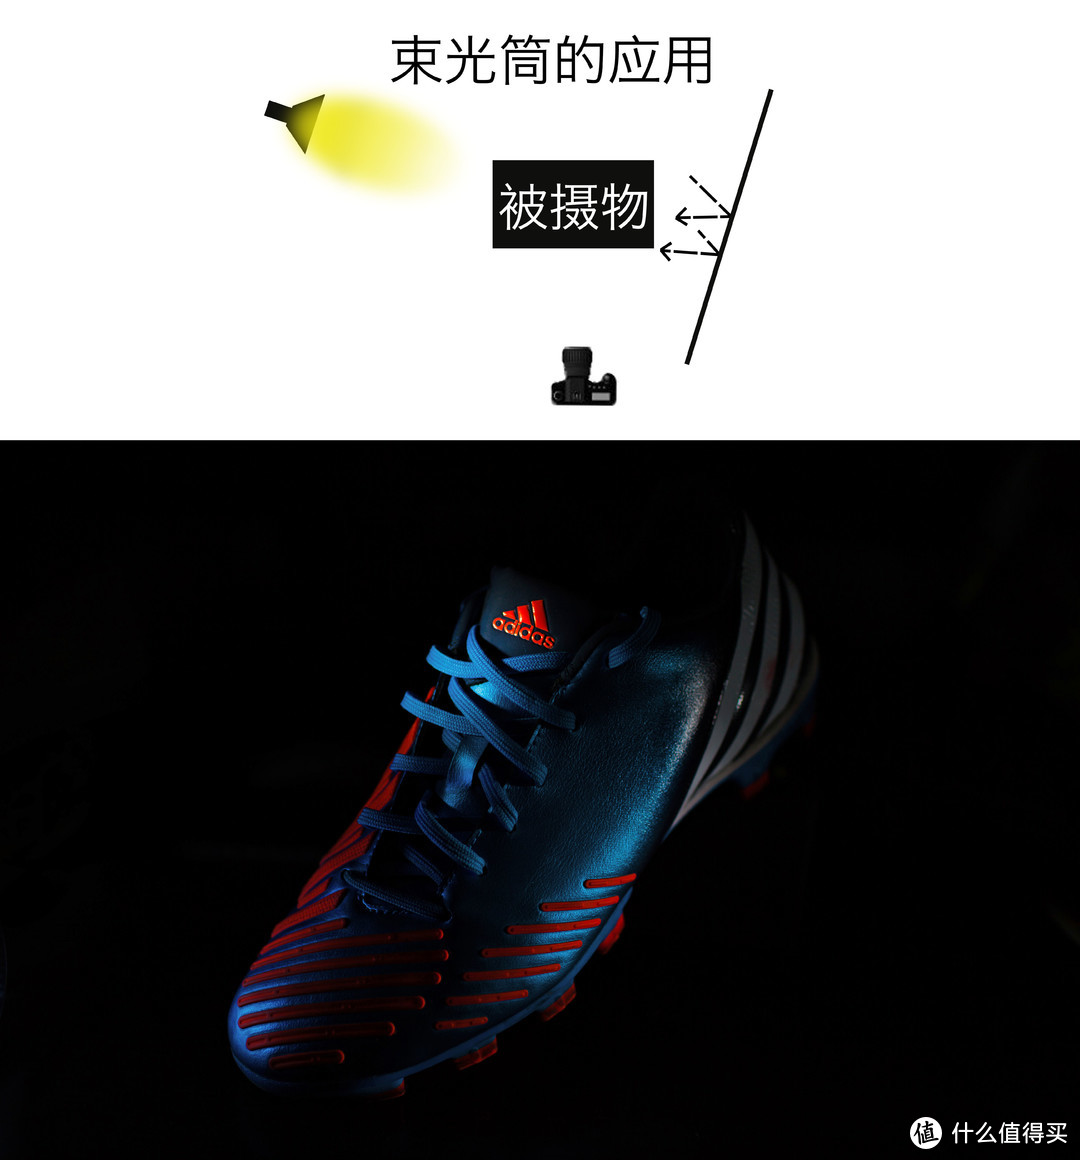 ▲为了展示鞋面上的摩擦条和LOGO，用束光筒控制光源打到指定位置，同时用高速快门压暗背景。